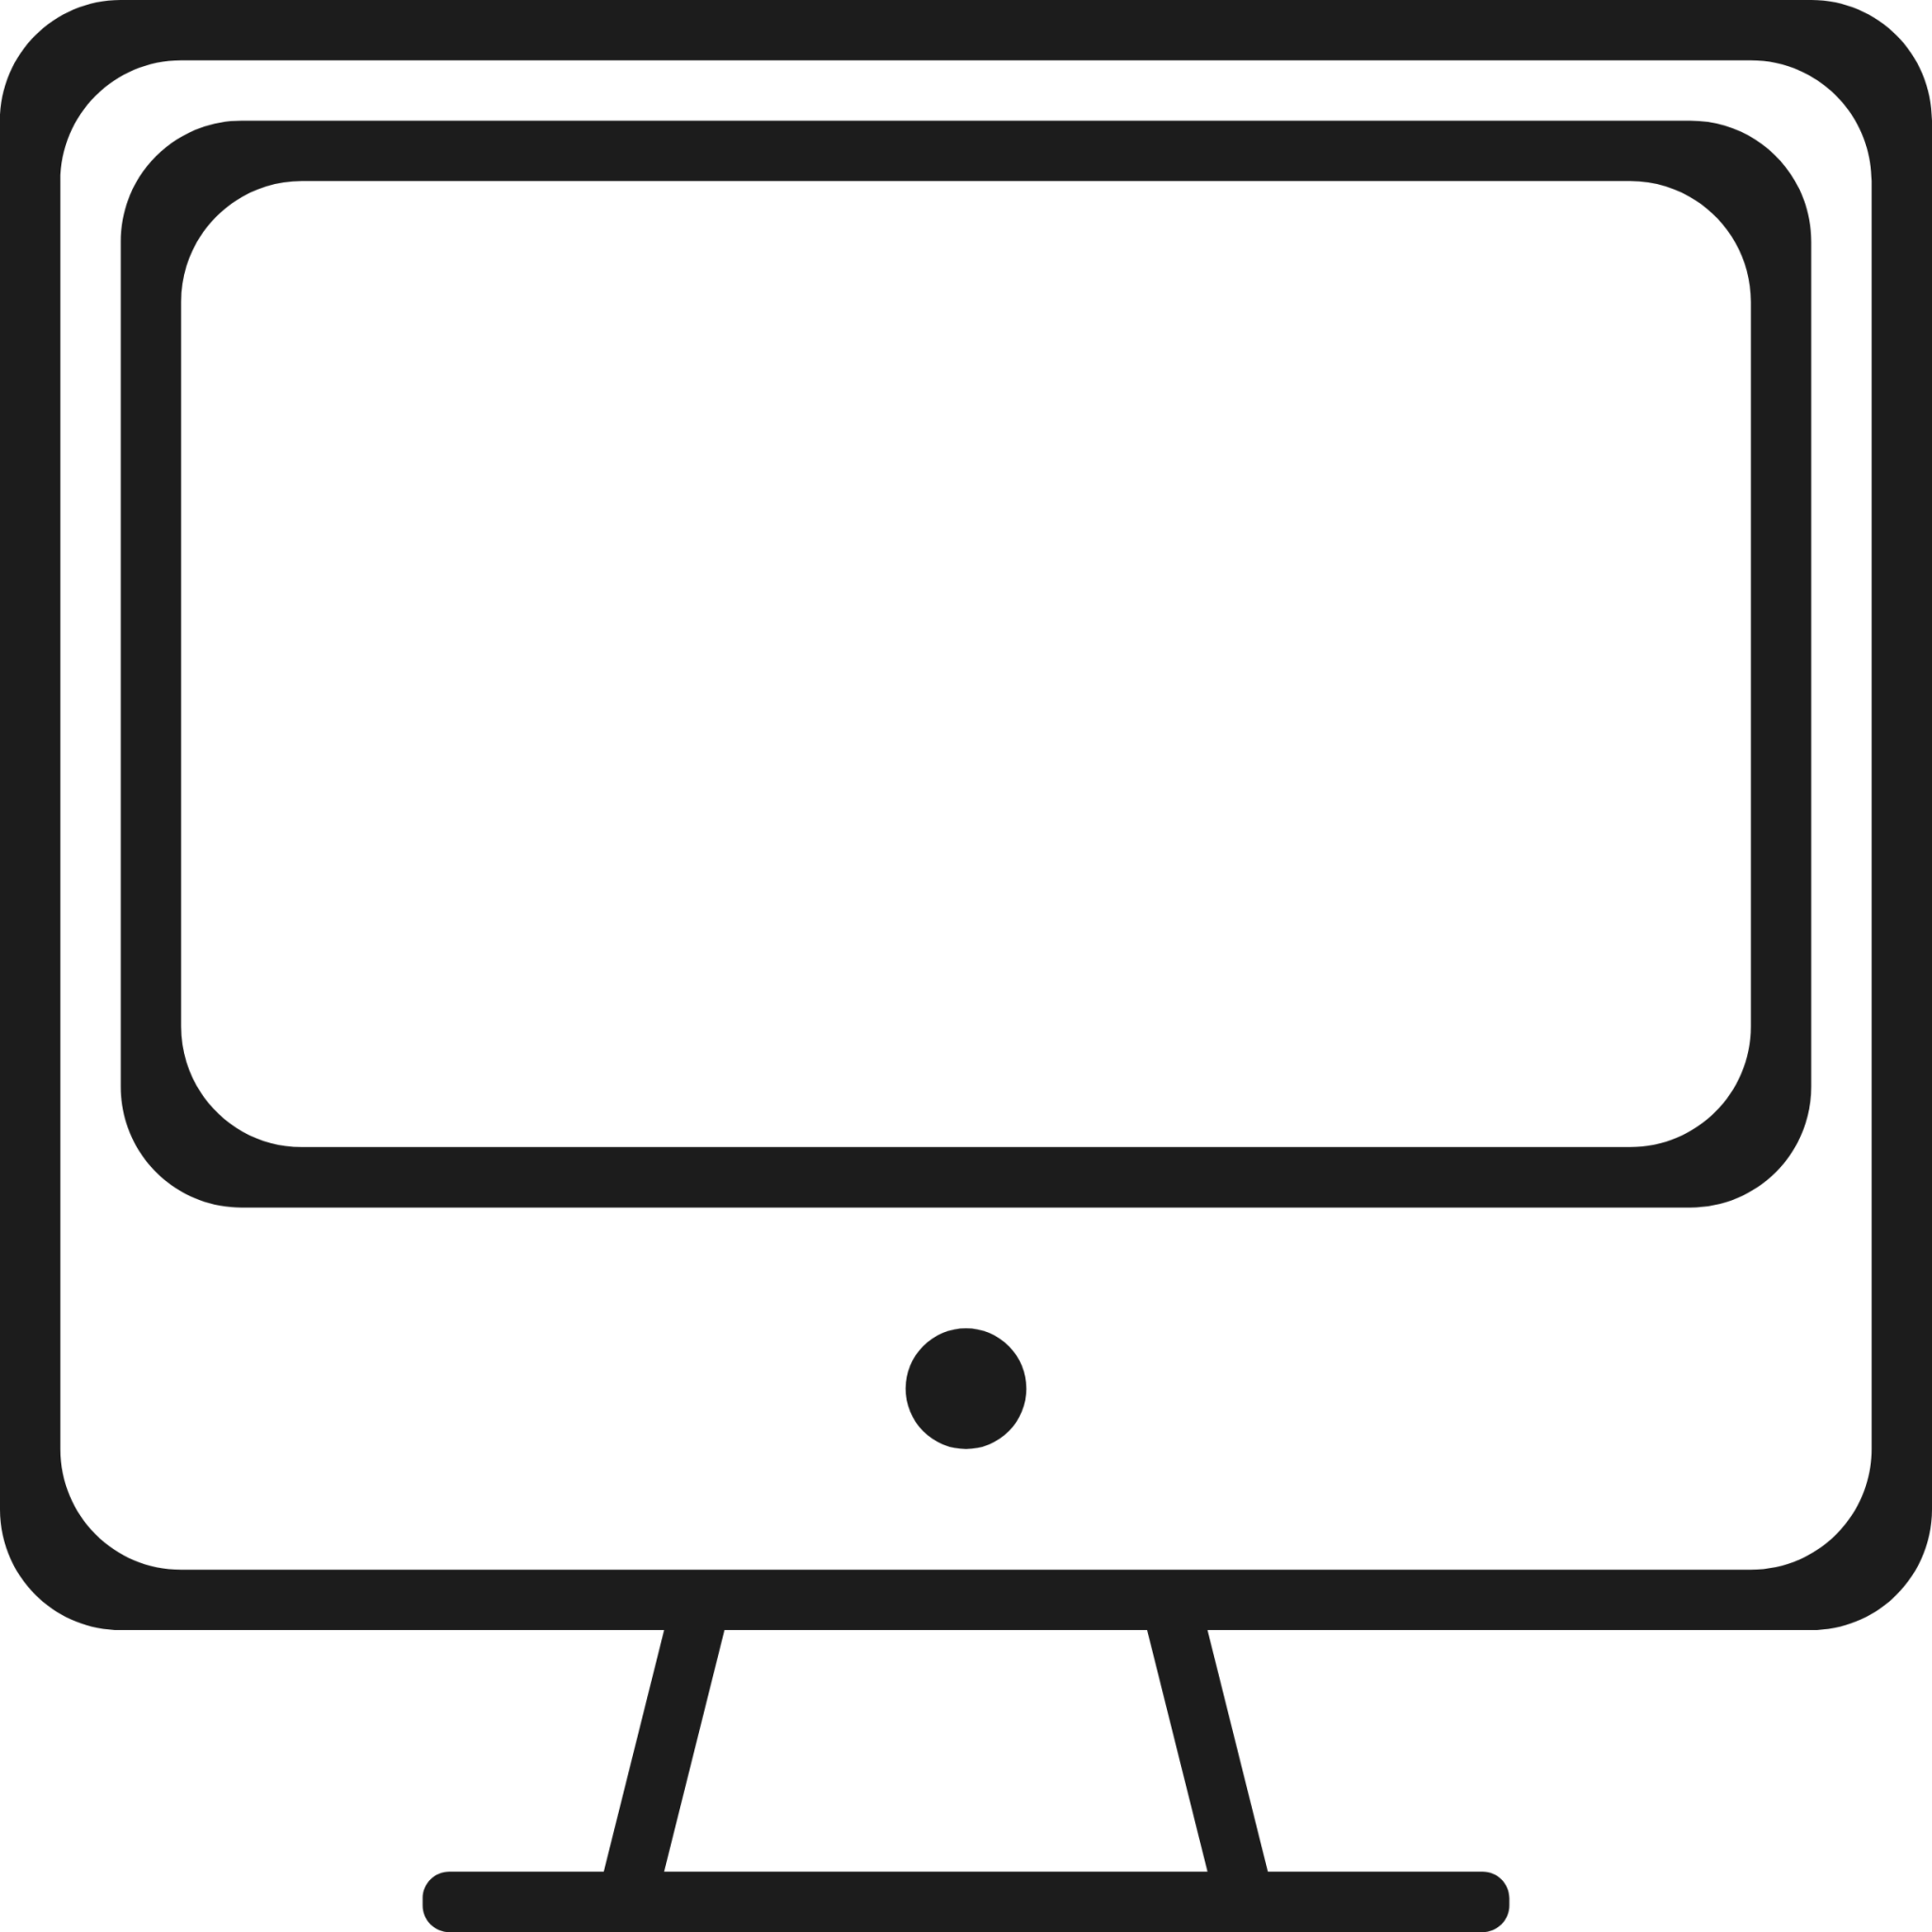 desktop icon black and white